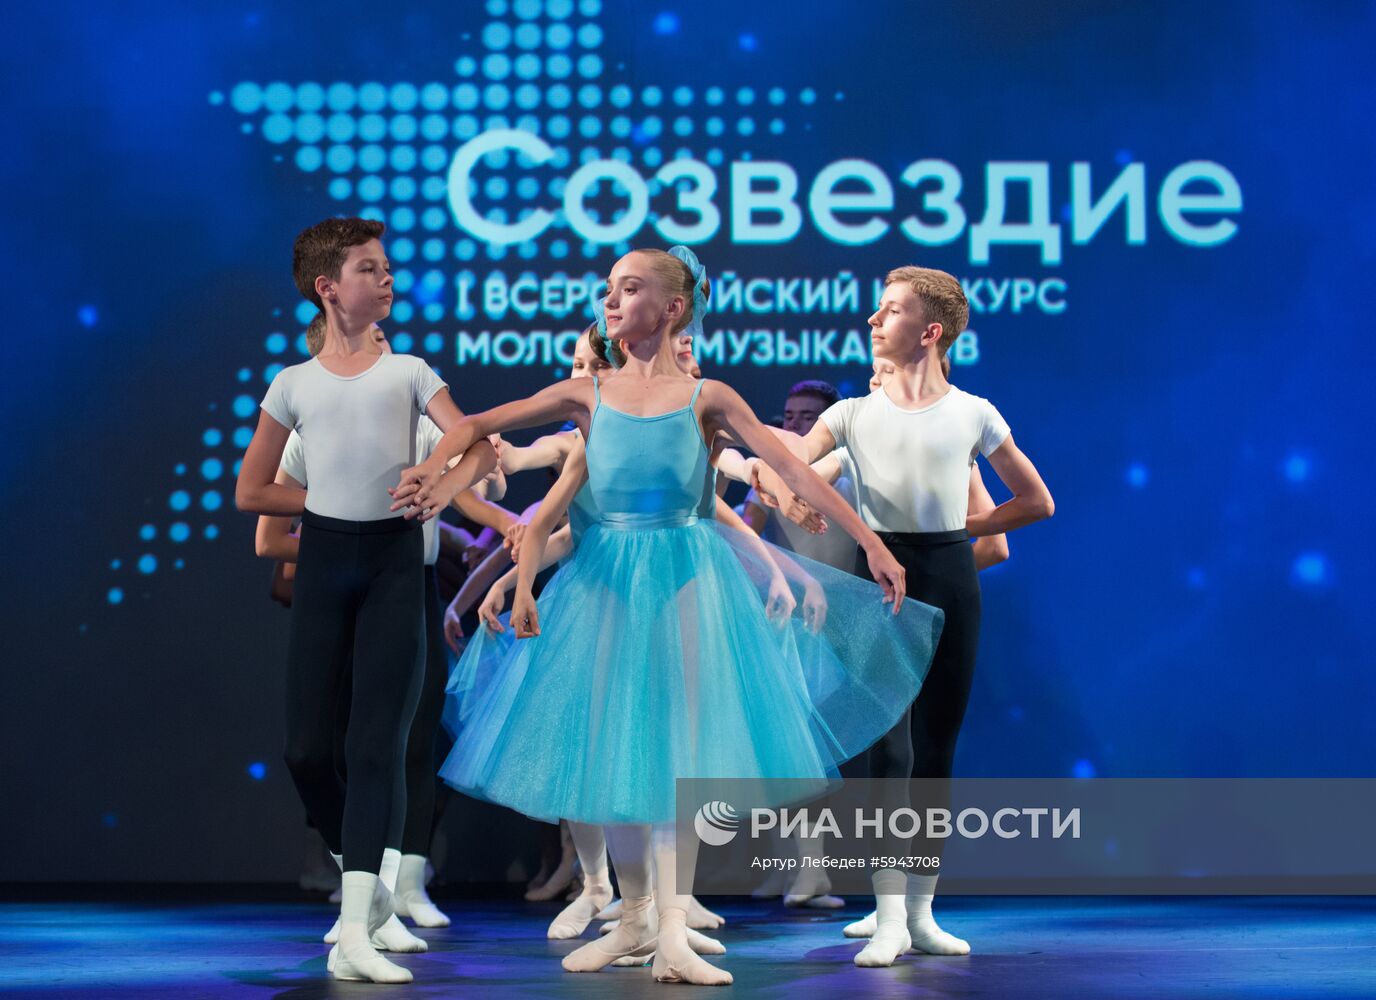 Всероссийский конкурс молодых музыкантов "Созвездие"